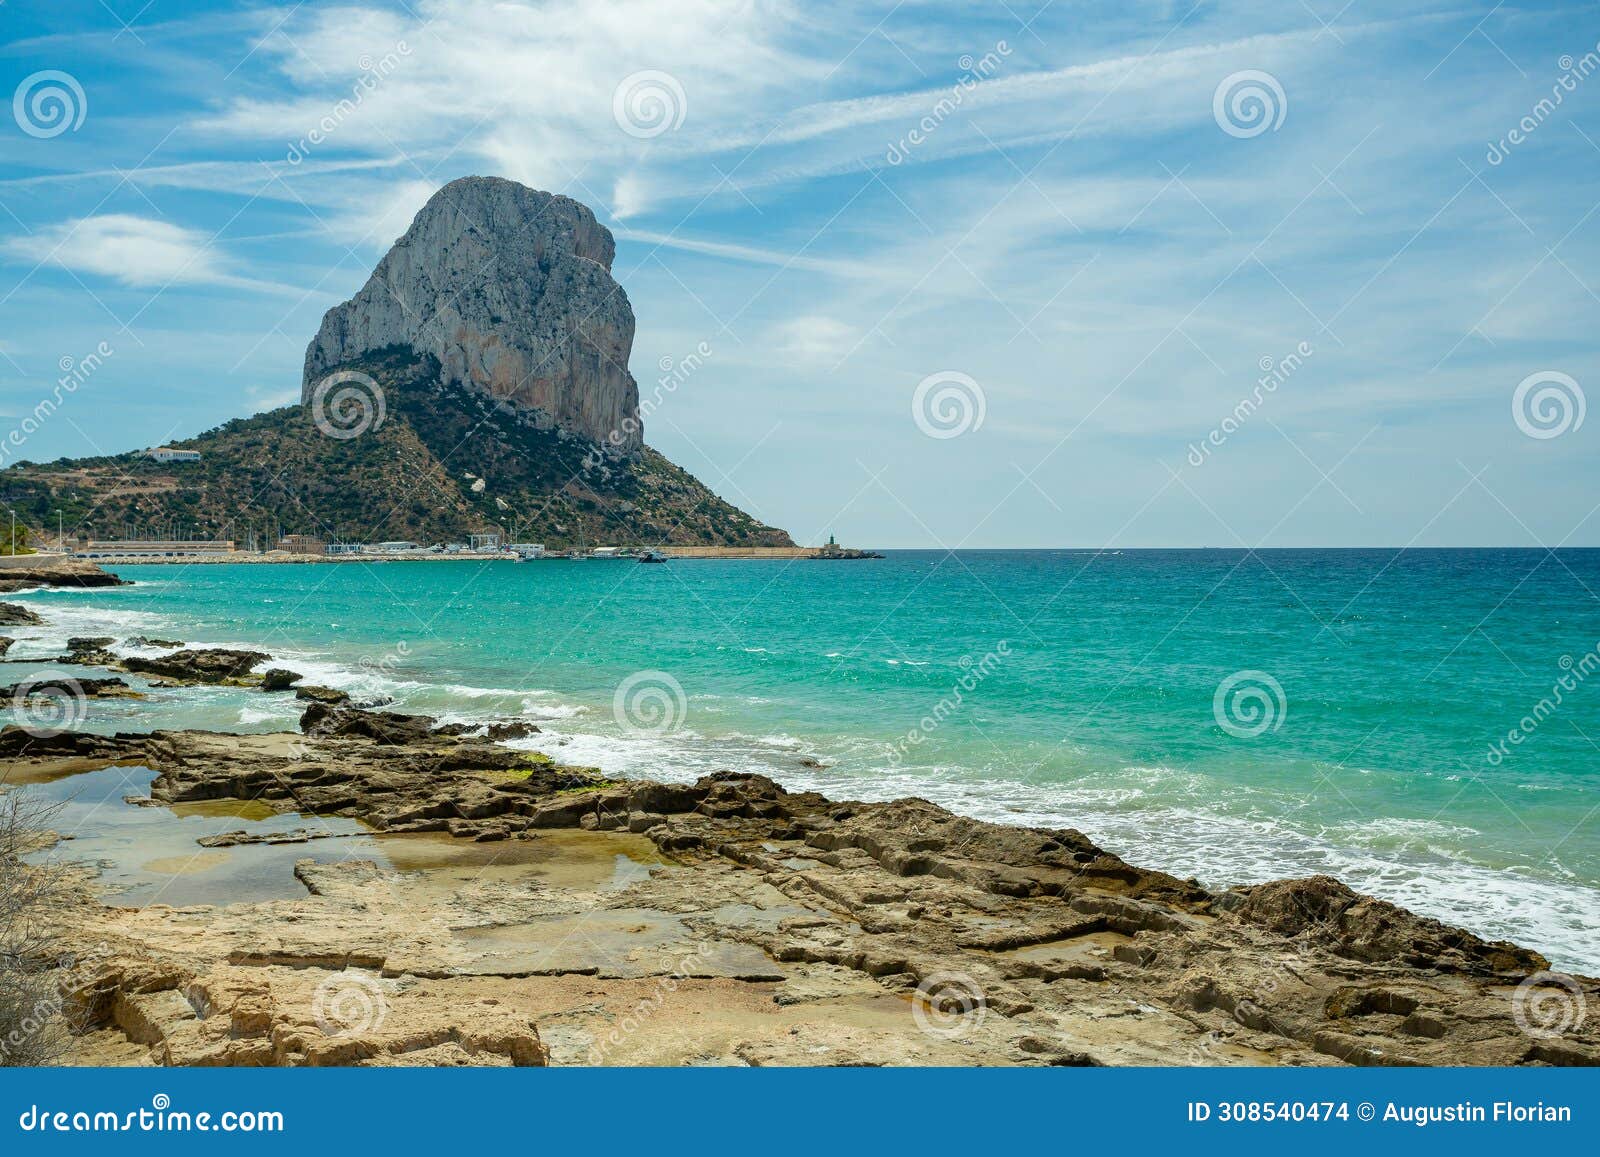 calpe (calp), spain. arenal-bol beach view and ifac